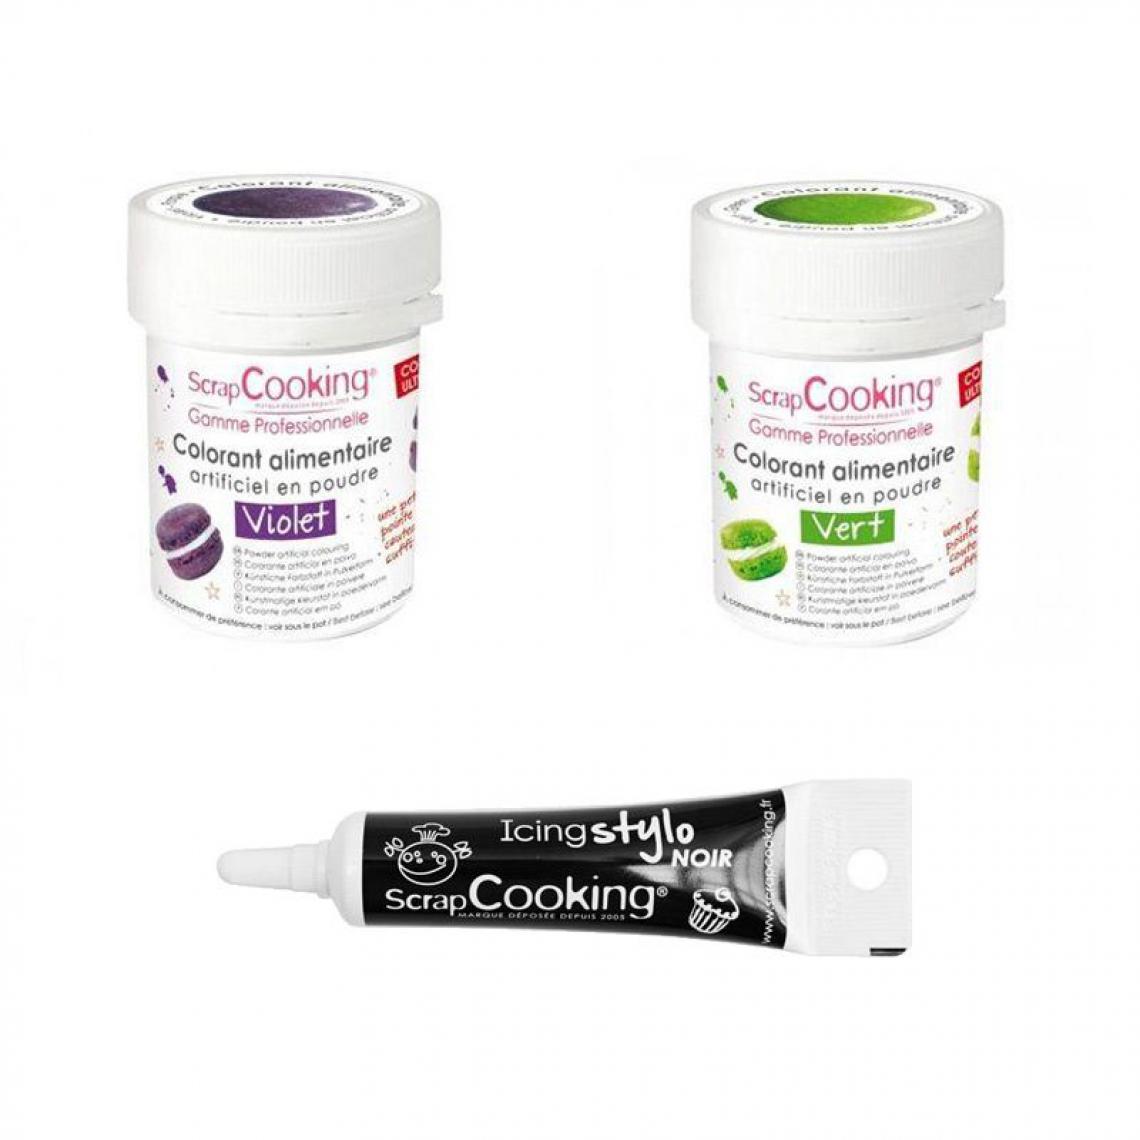 Scrapcooking - 2 colorants alimentaires vert-violet + Stylo glaçage noir - Kits créatifs